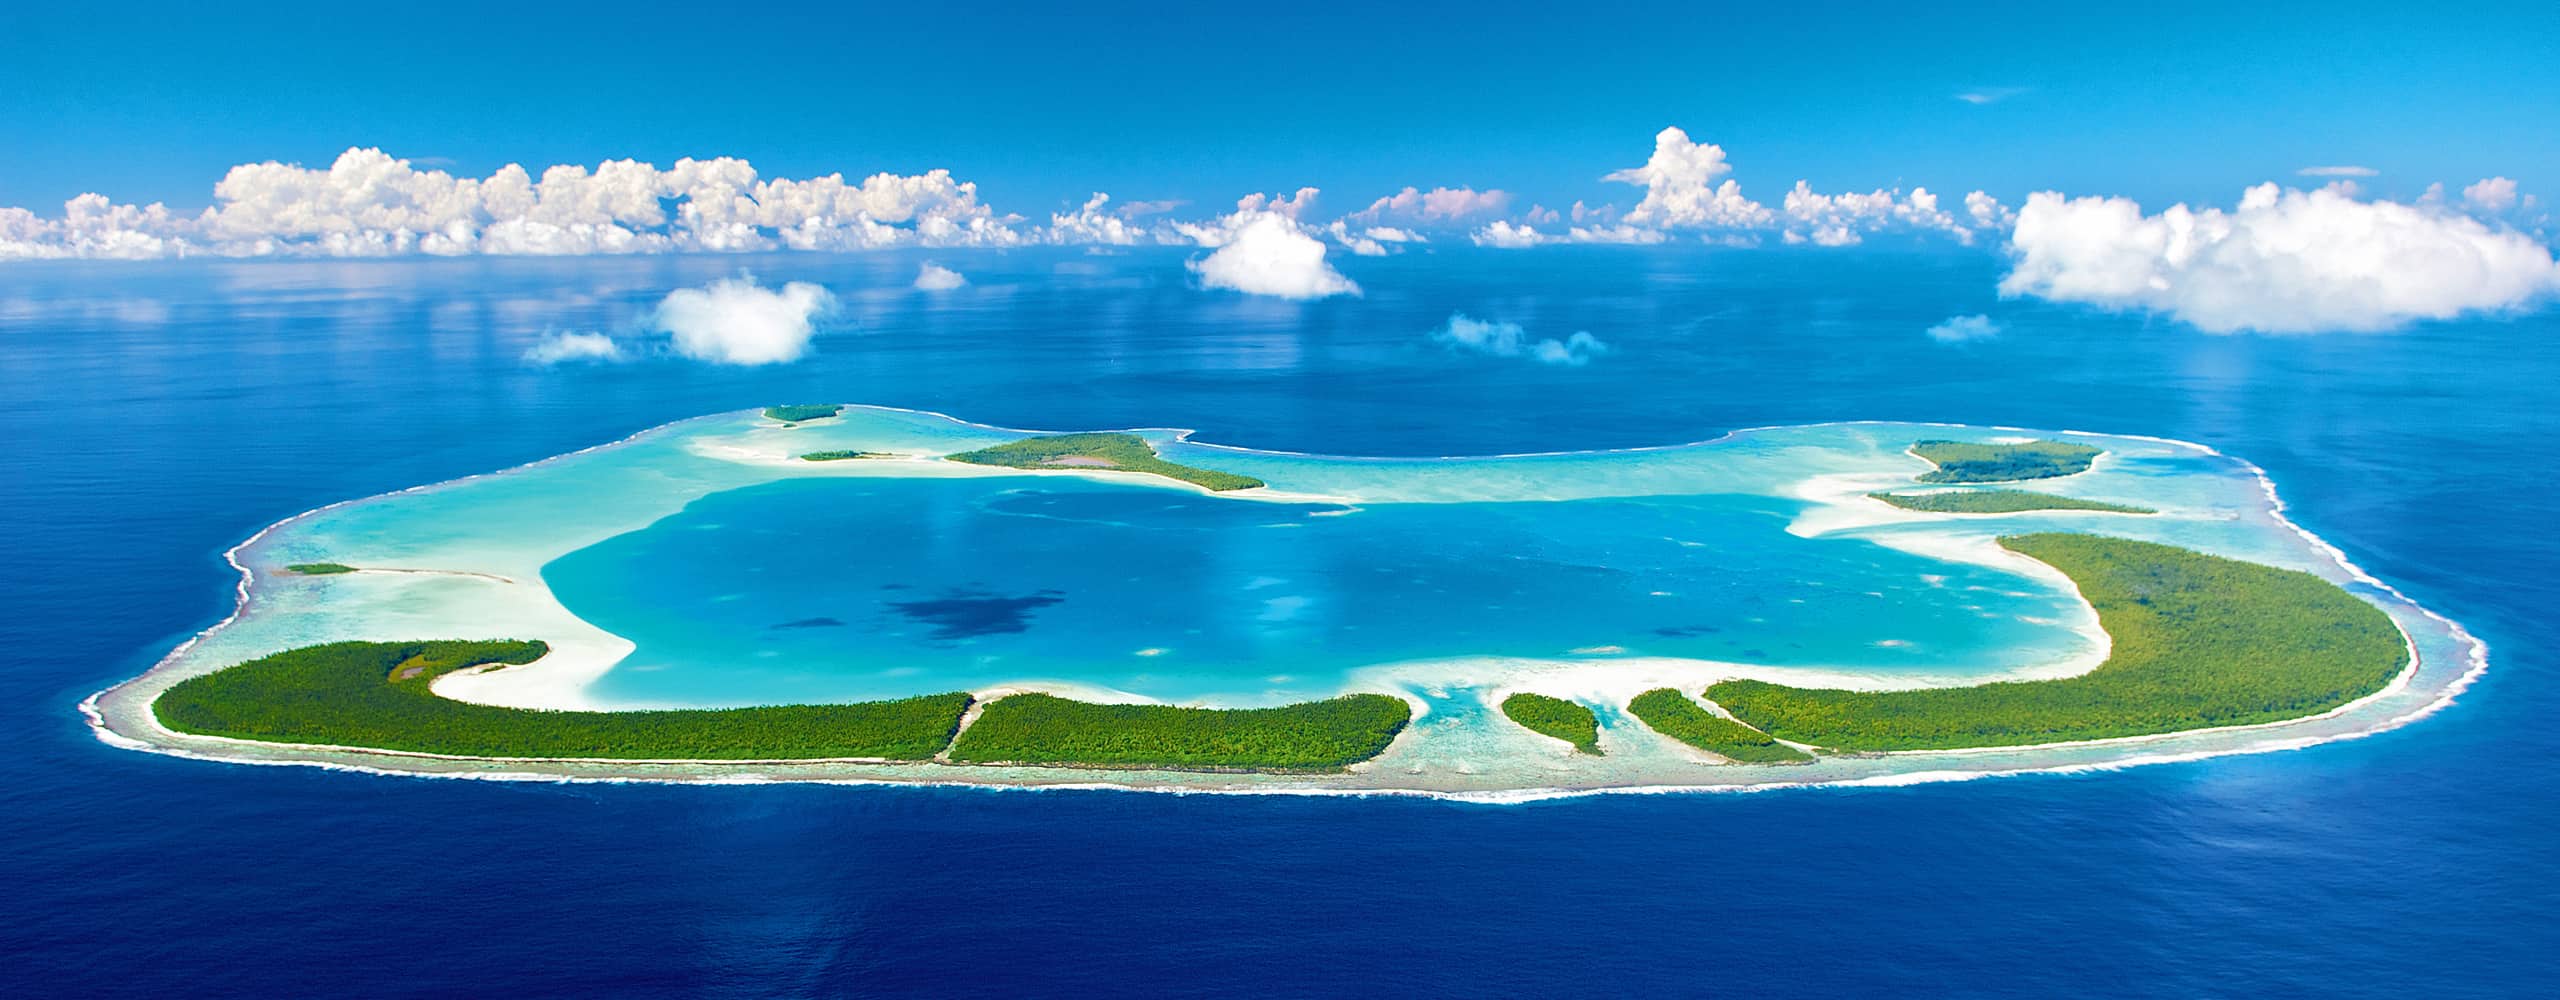 Tetiaroa Atoll, French Polynesia